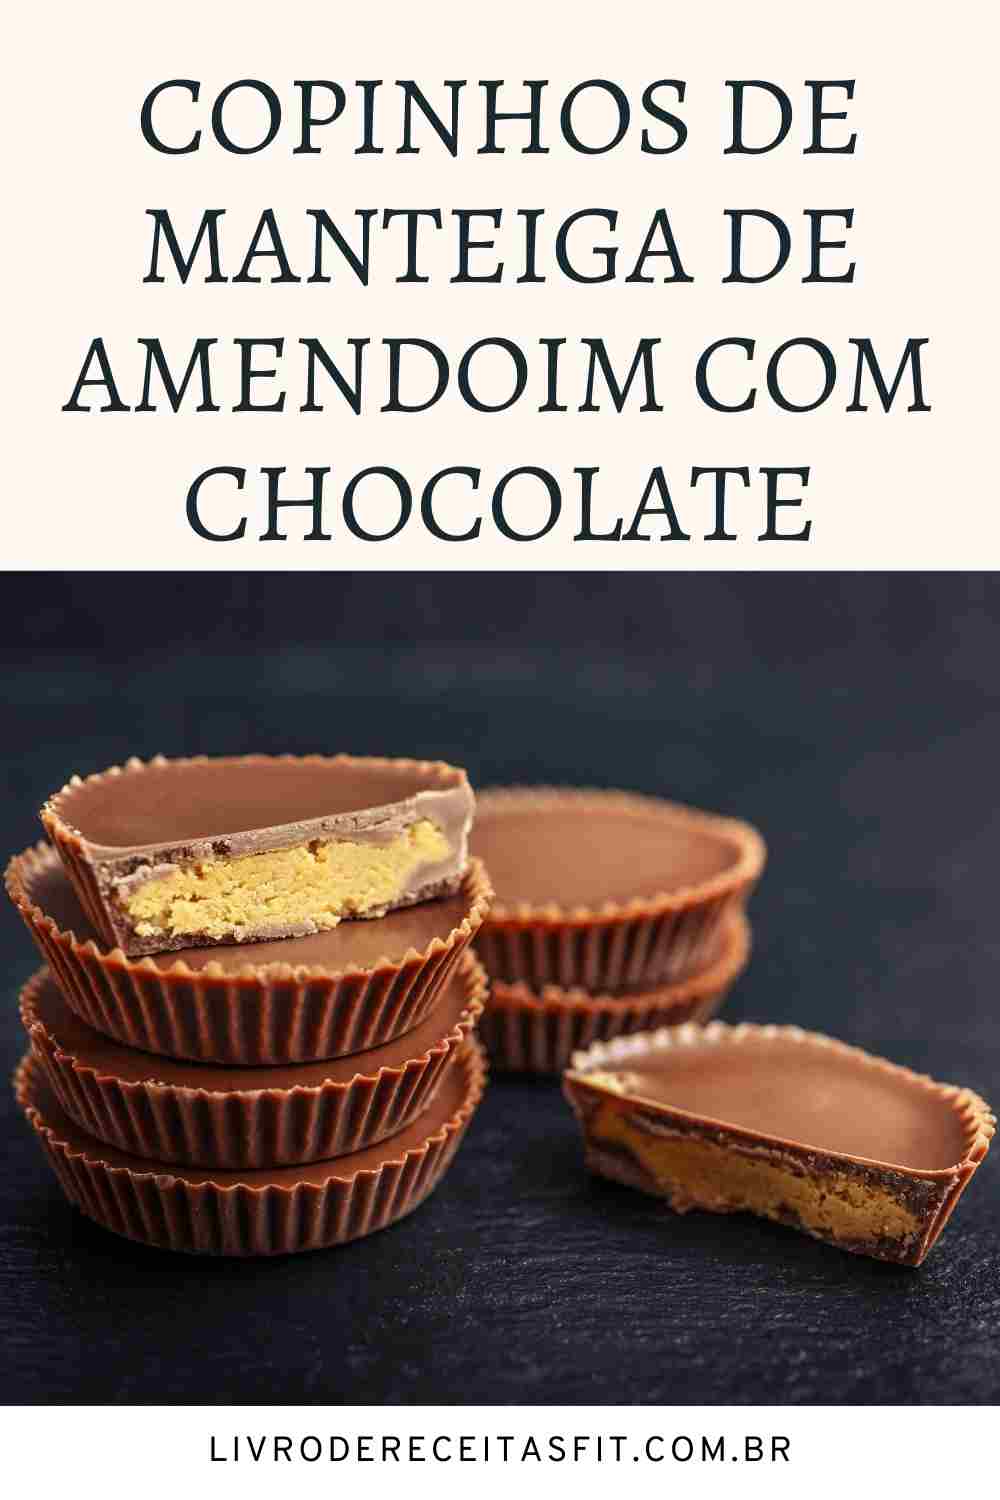 You are currently viewing Copinhos de Manteiga de Amendoim com Chocolate